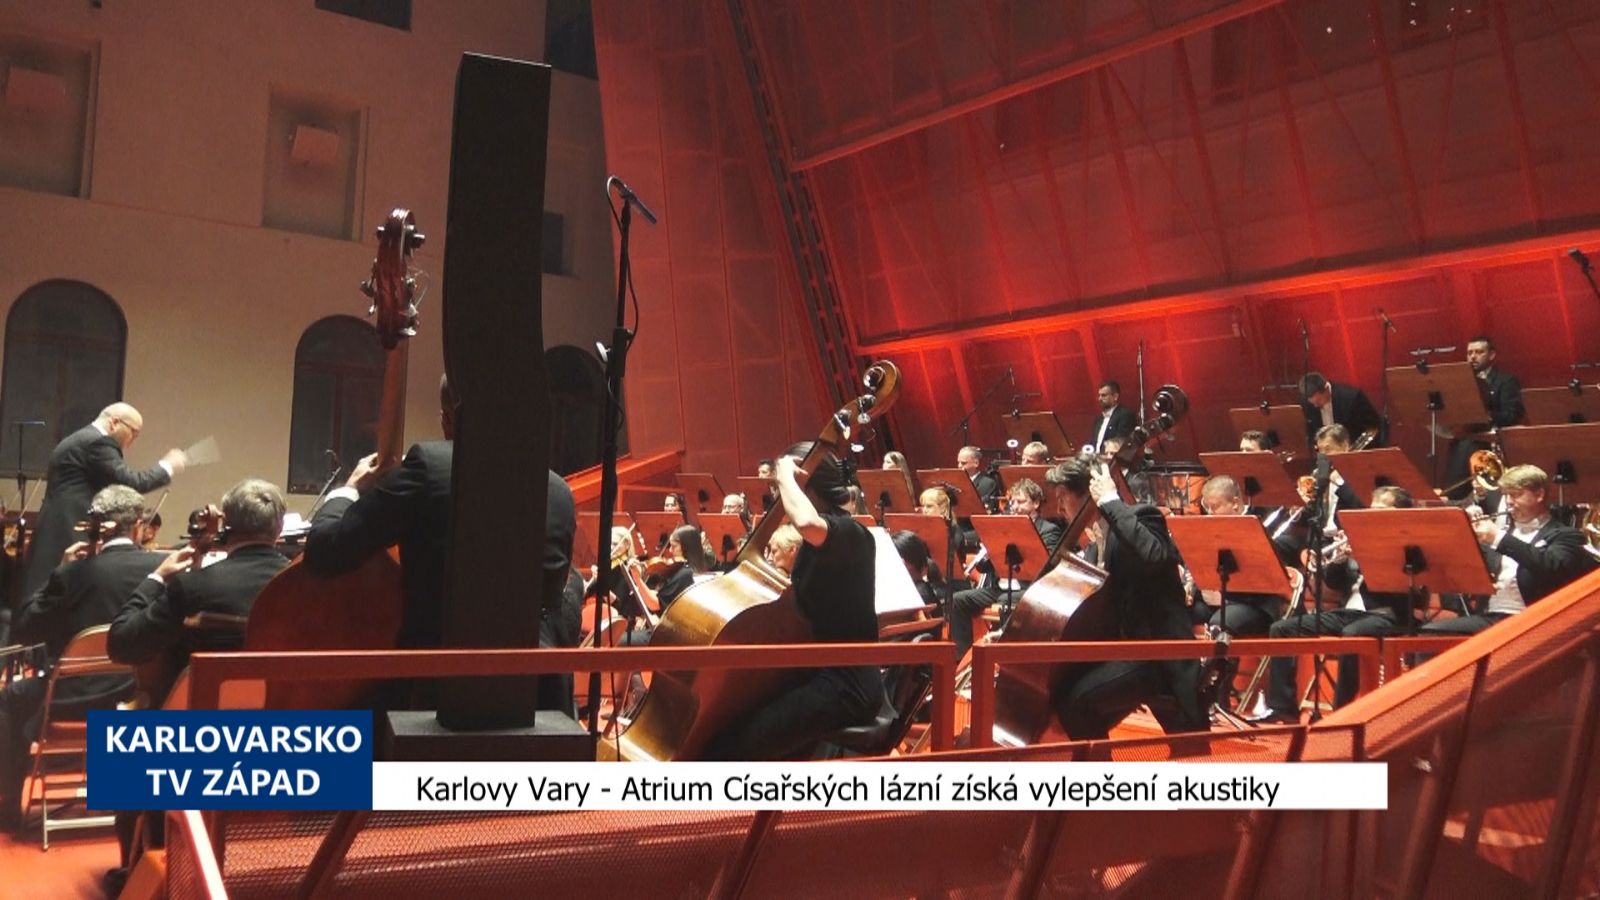 Karlovy Vary: Atrium Císařských lázní získá vylepšení akustiky (TV Západ)